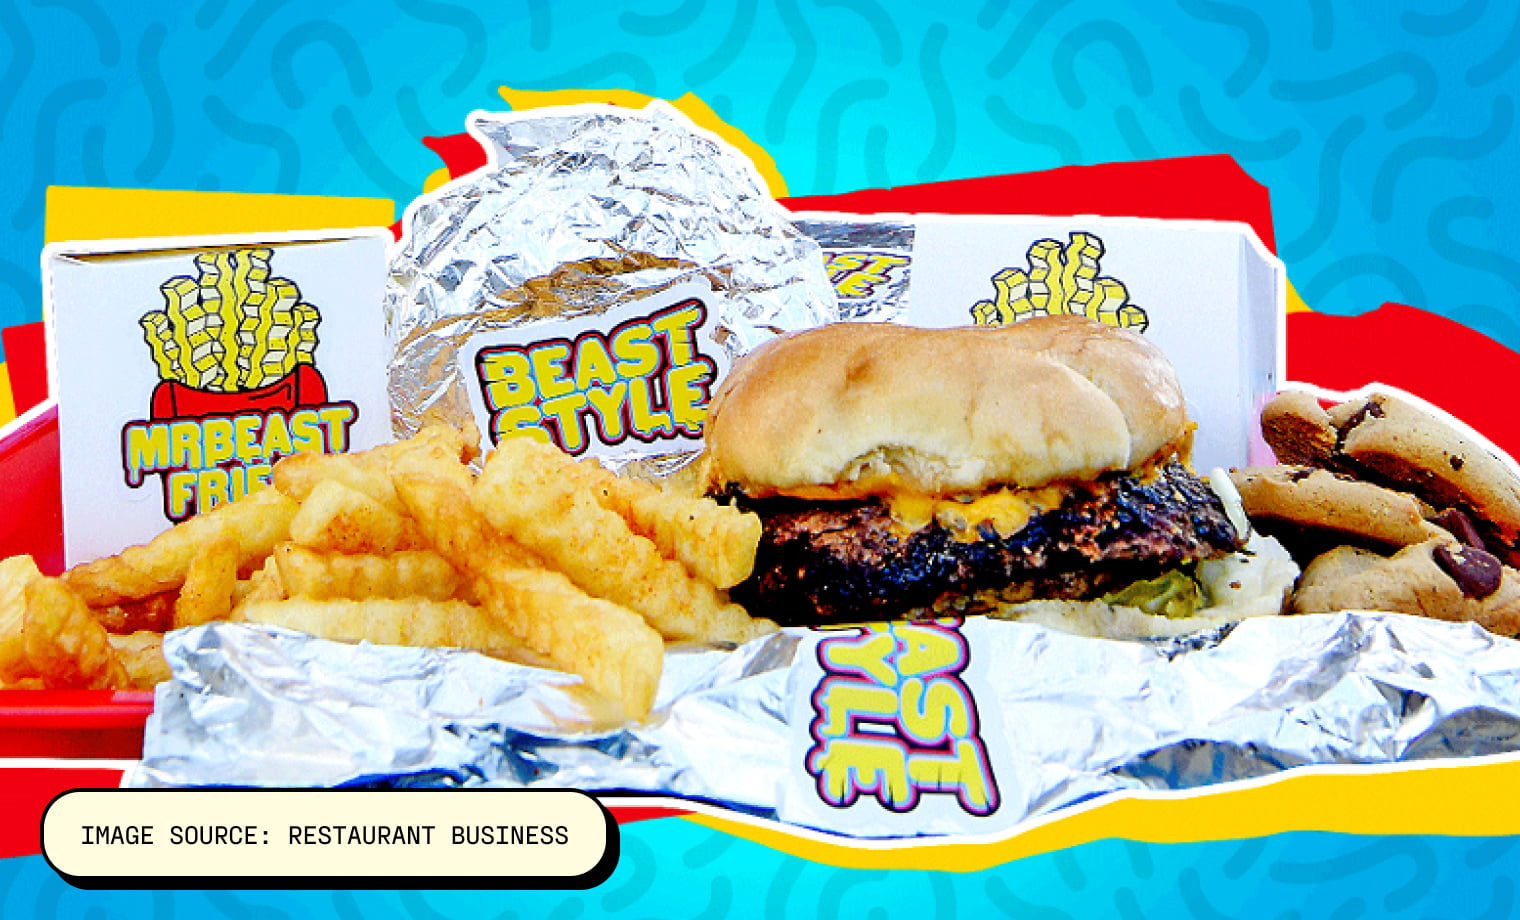 MrBeast Burger Image source: Restaurant Business